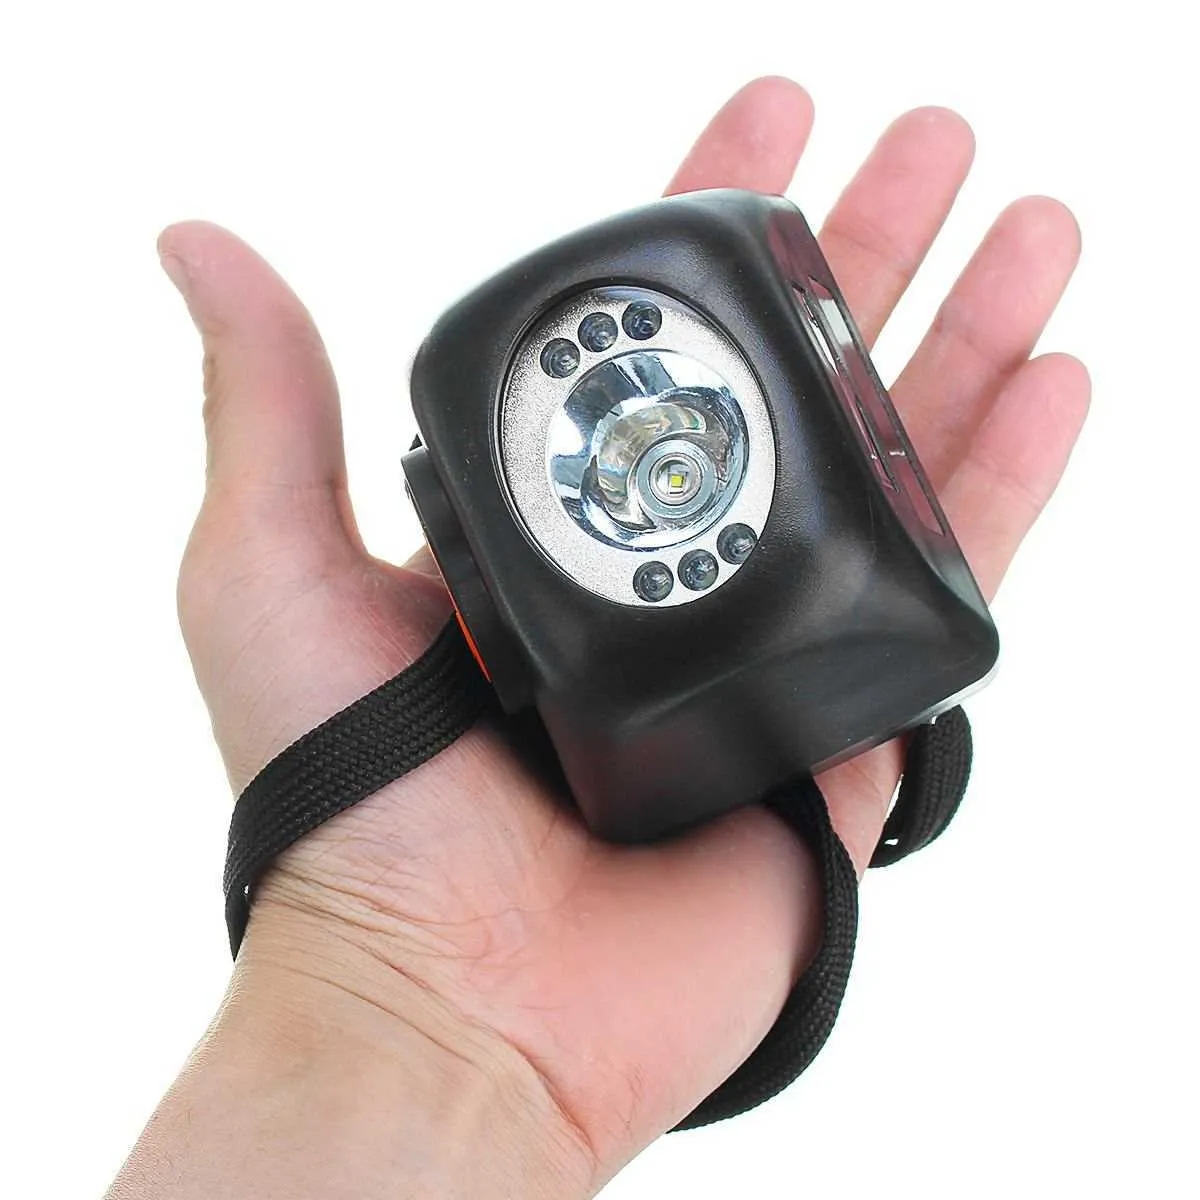 Display de LED 3W 4500LM Lâmpada de farol LED sem fio Lanterna de segurança Bateria de íon de lítio recarregável Miner Cap Light P0820